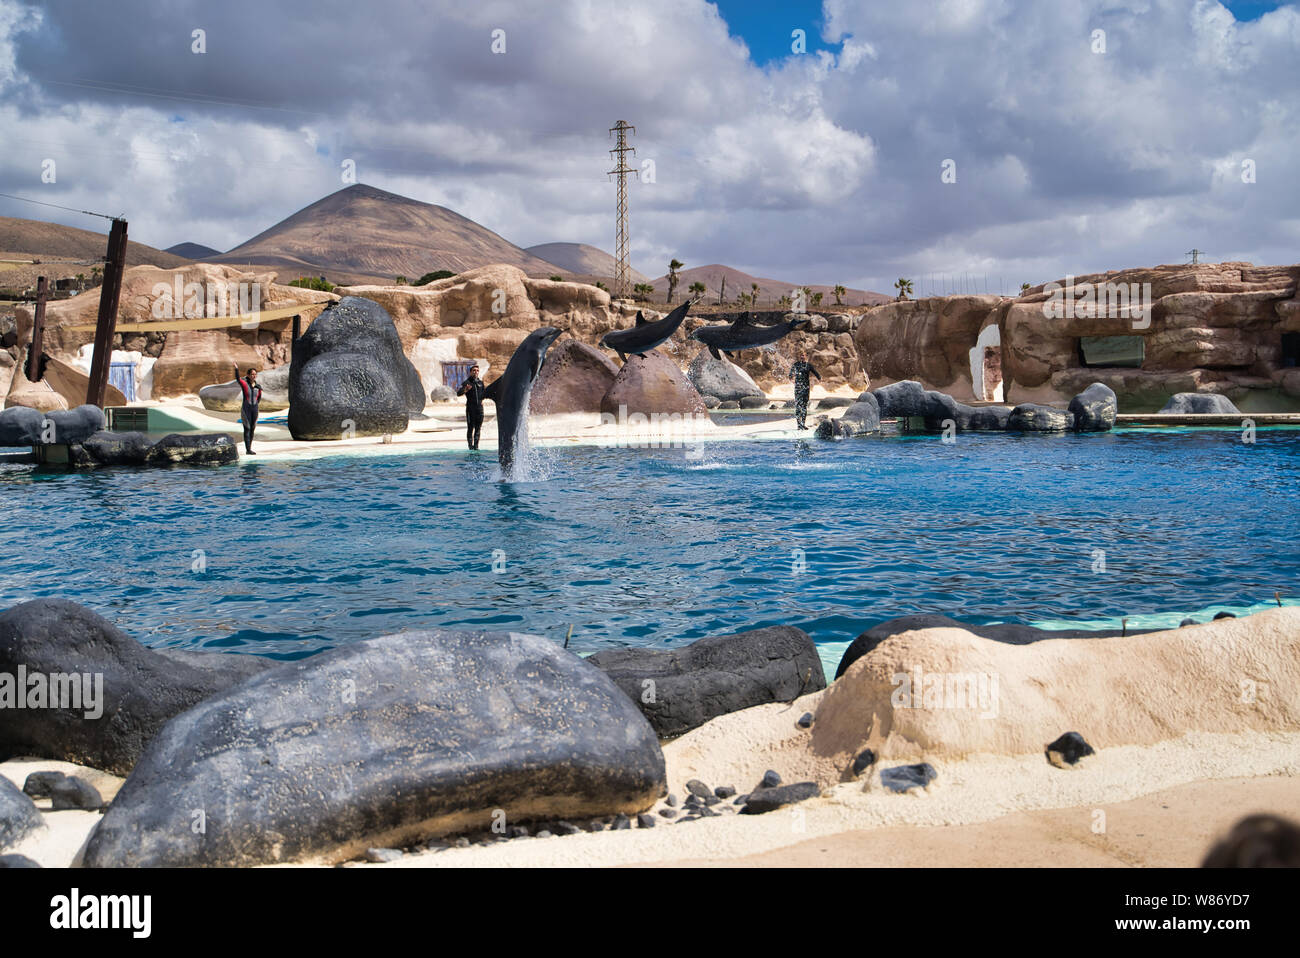 Lanzarote, Isole Canarie, Spagna - 20 Aprile 2019: Rancho Texas Park è il più grande zoo di Lanzarote. Spettacolo con delfini del mare in piscina. Foto Stock